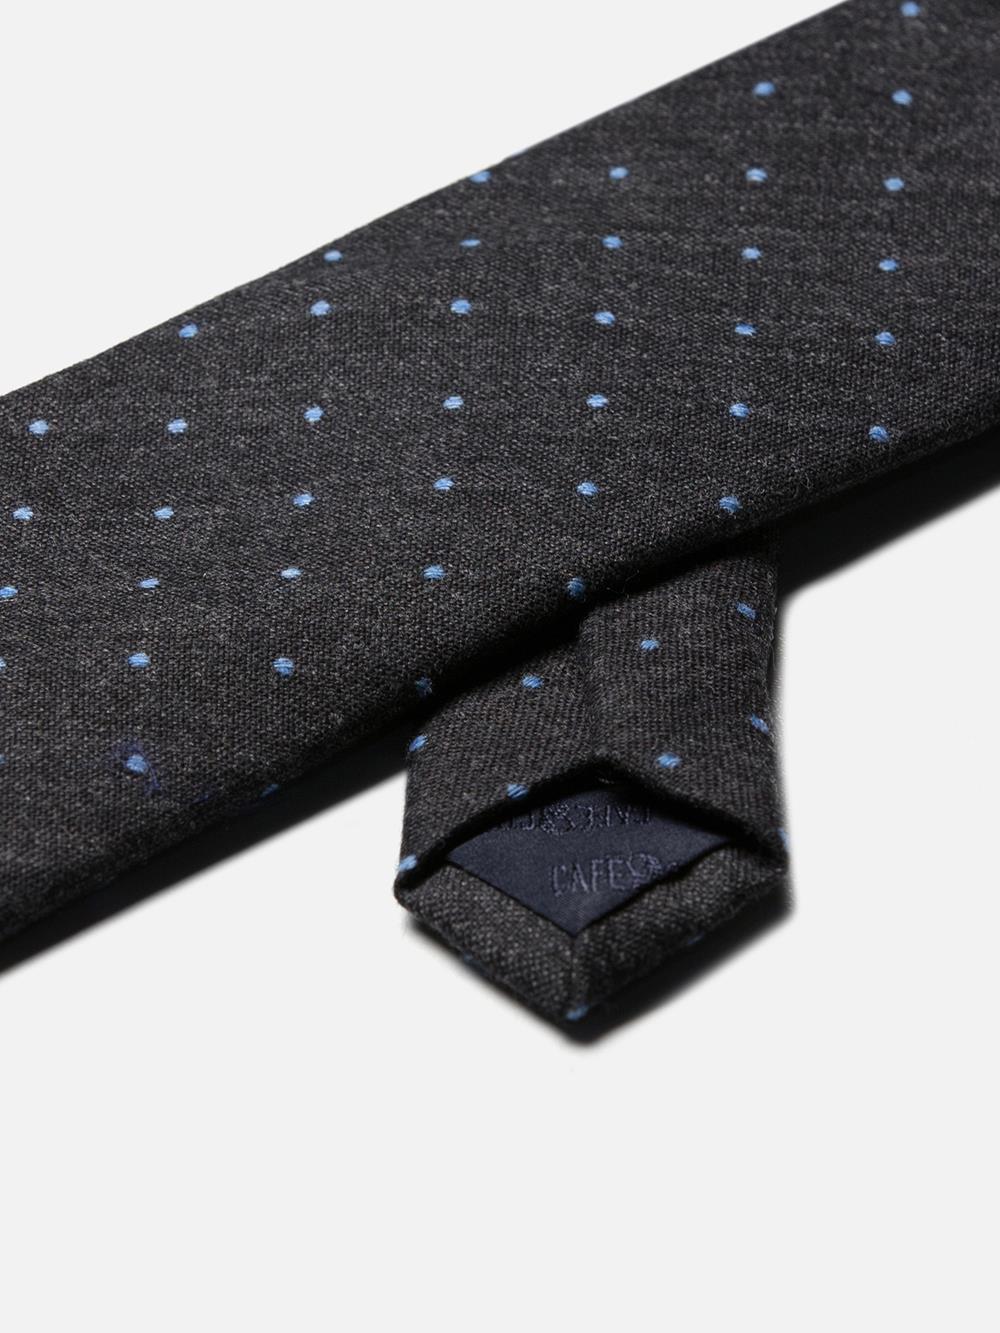 Grijze wollen en zijden met hemelsblauwe stippen stropdas 